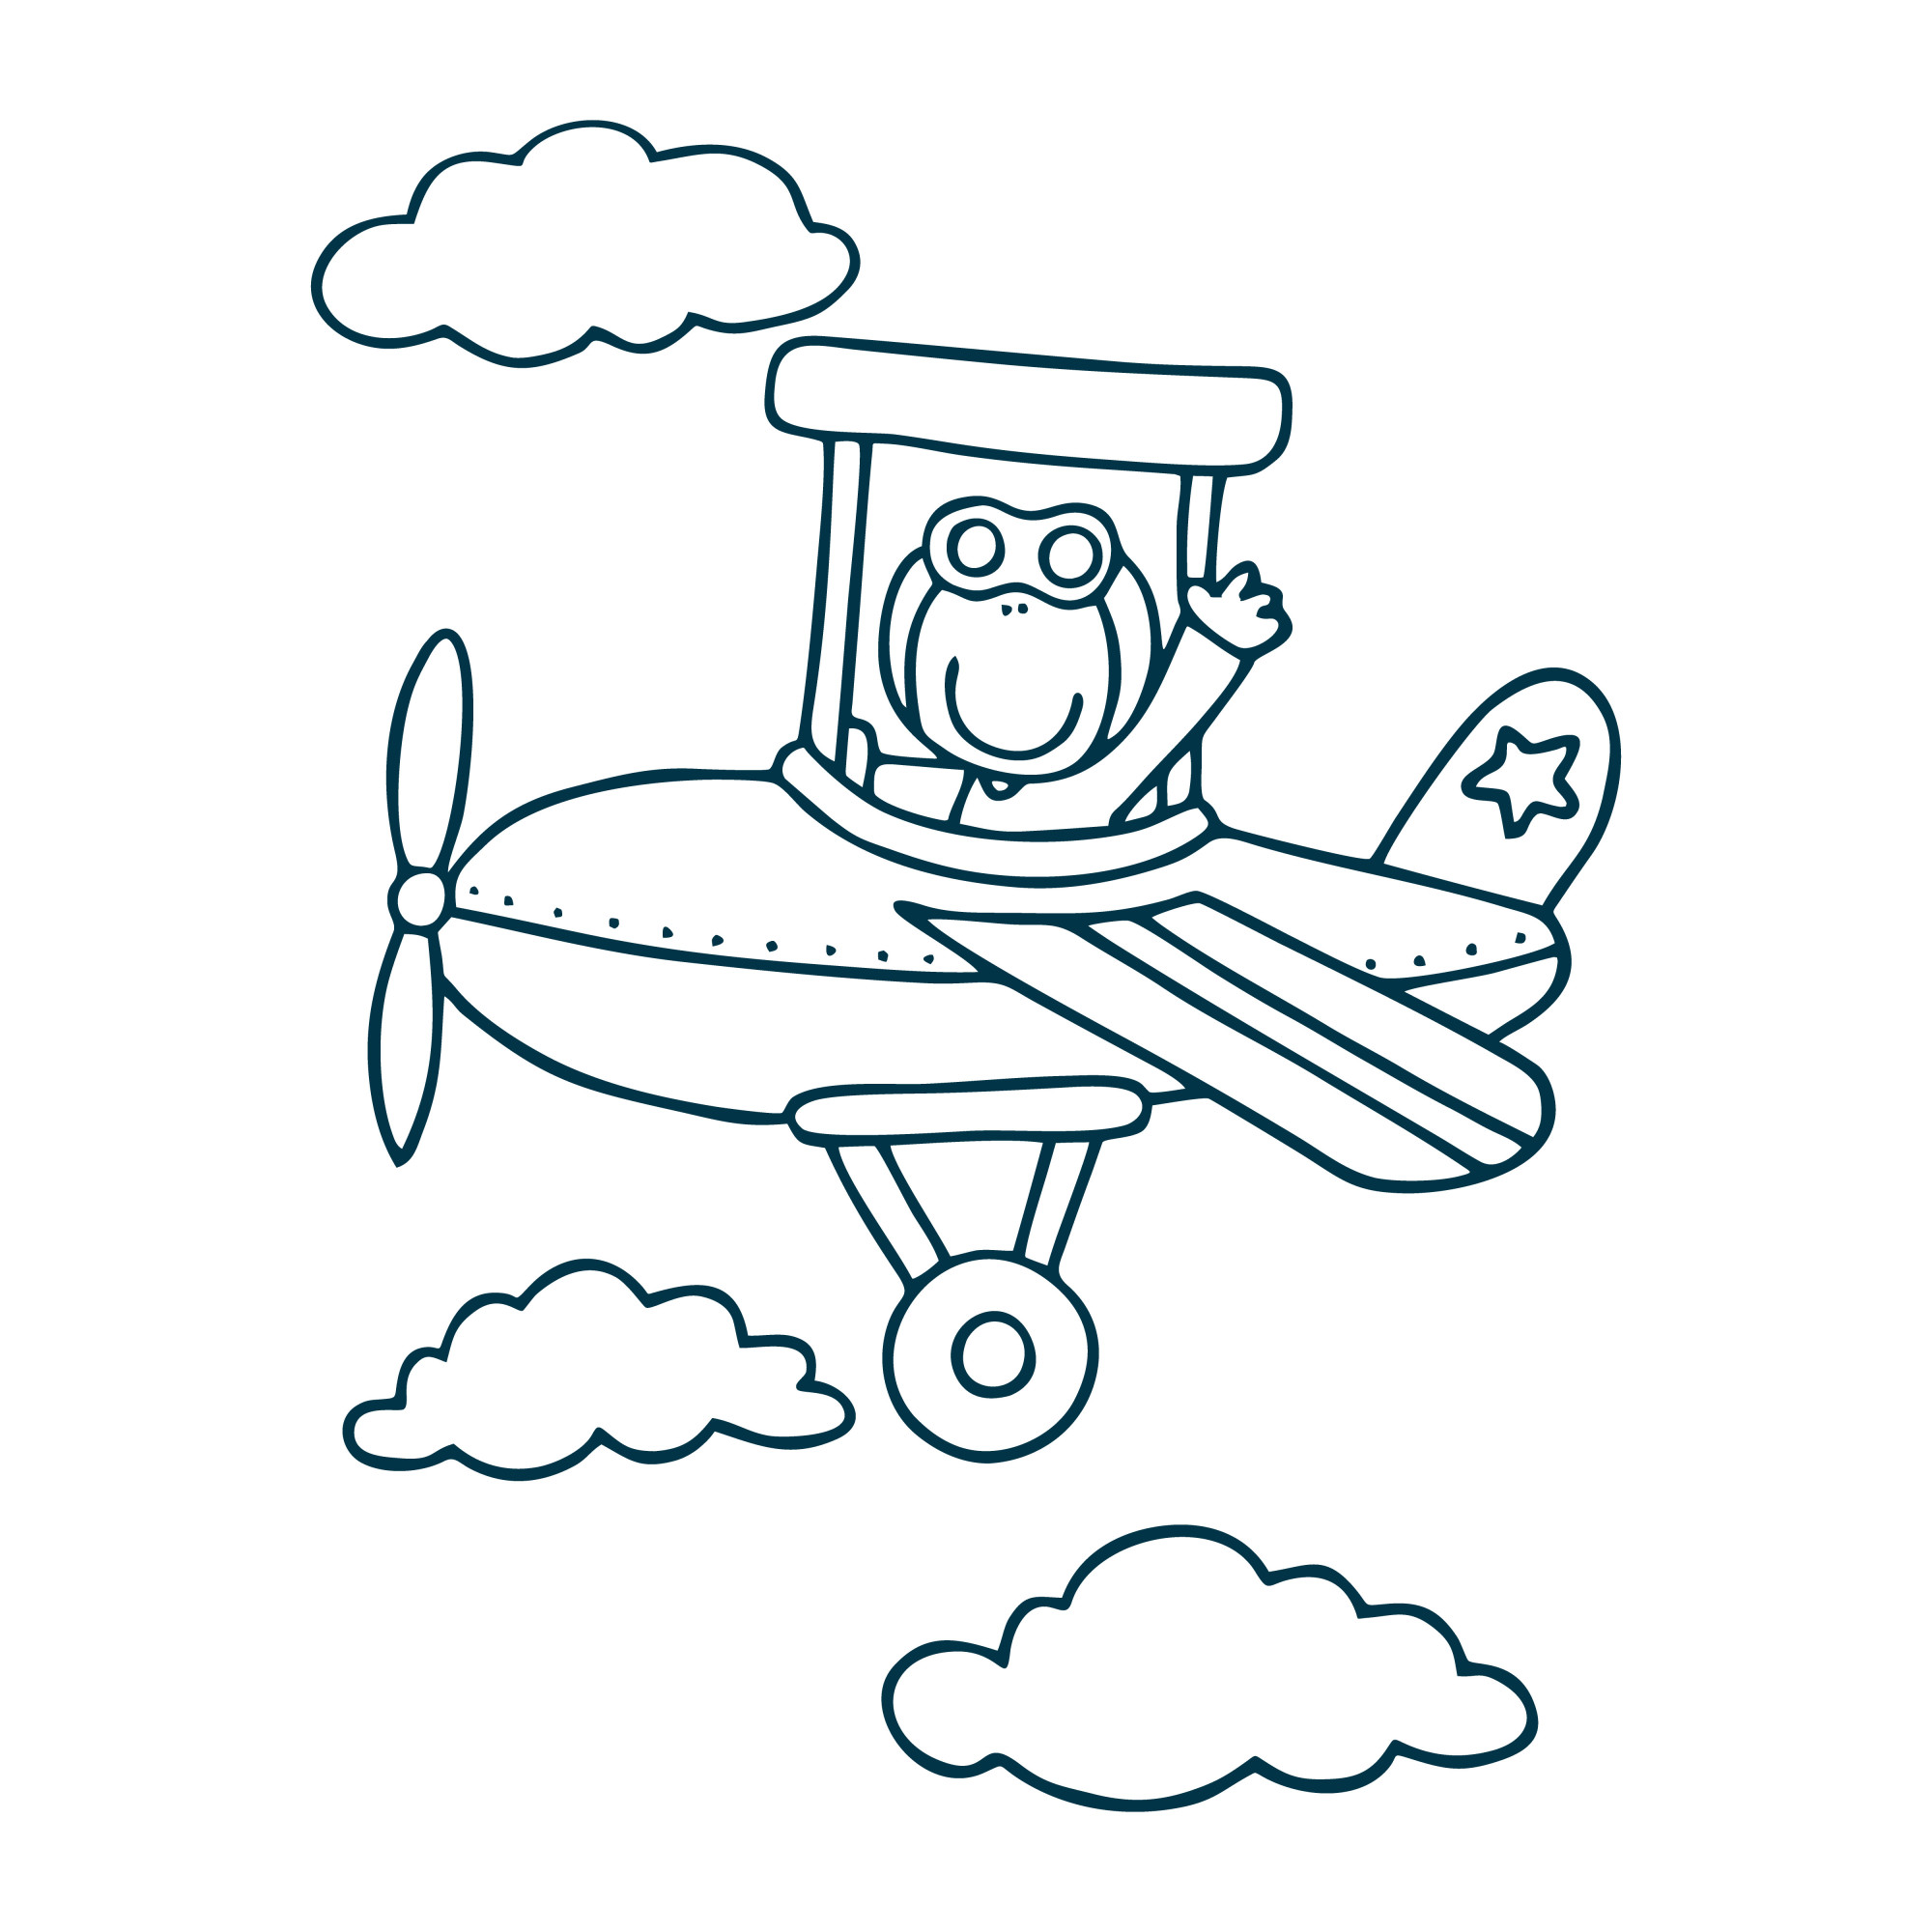 Раскраска для детей: игрушечный самолет в облаках и звездой на хвосте